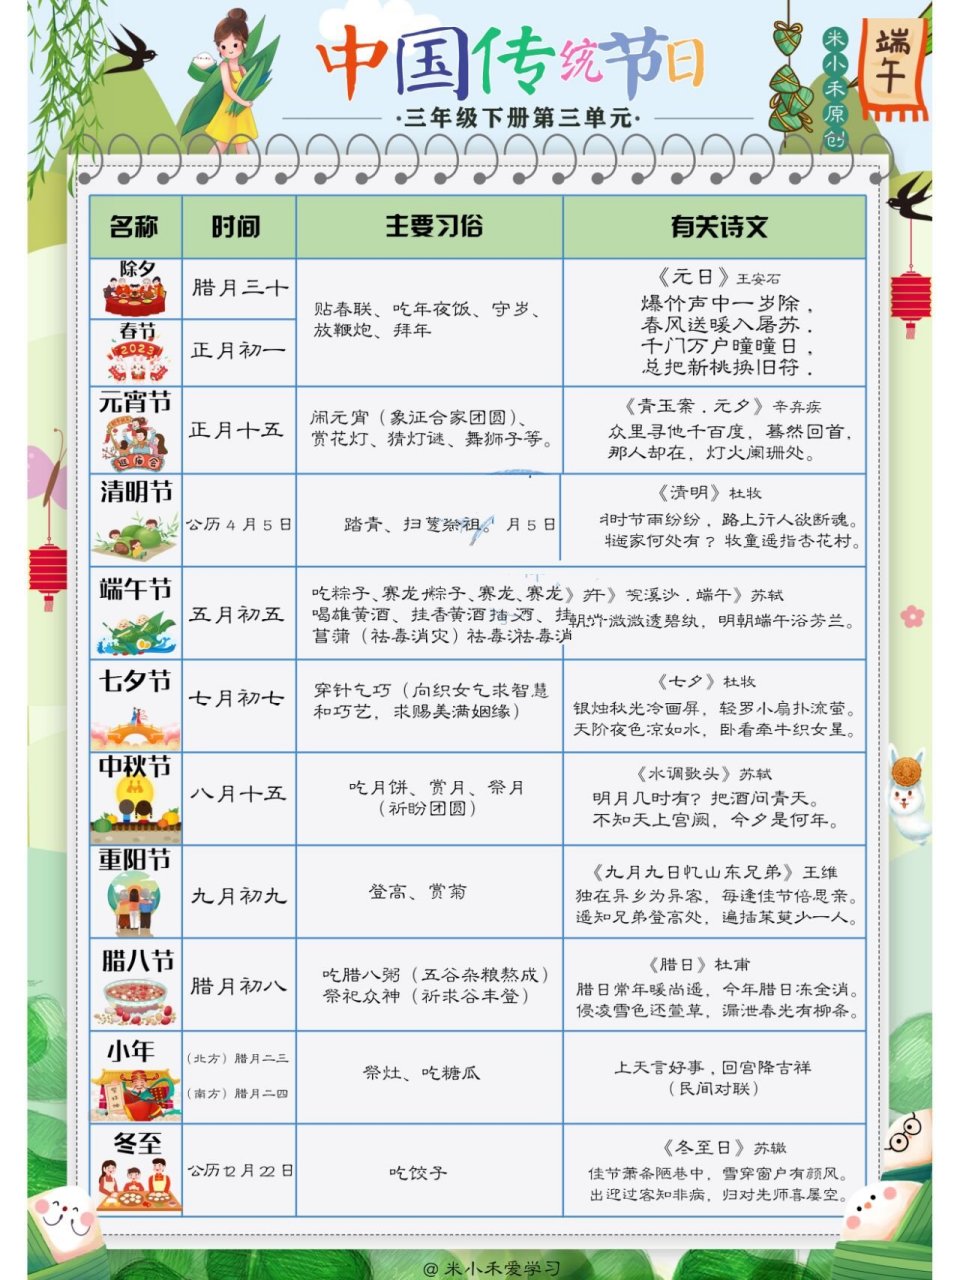 中国传统节日列表图片